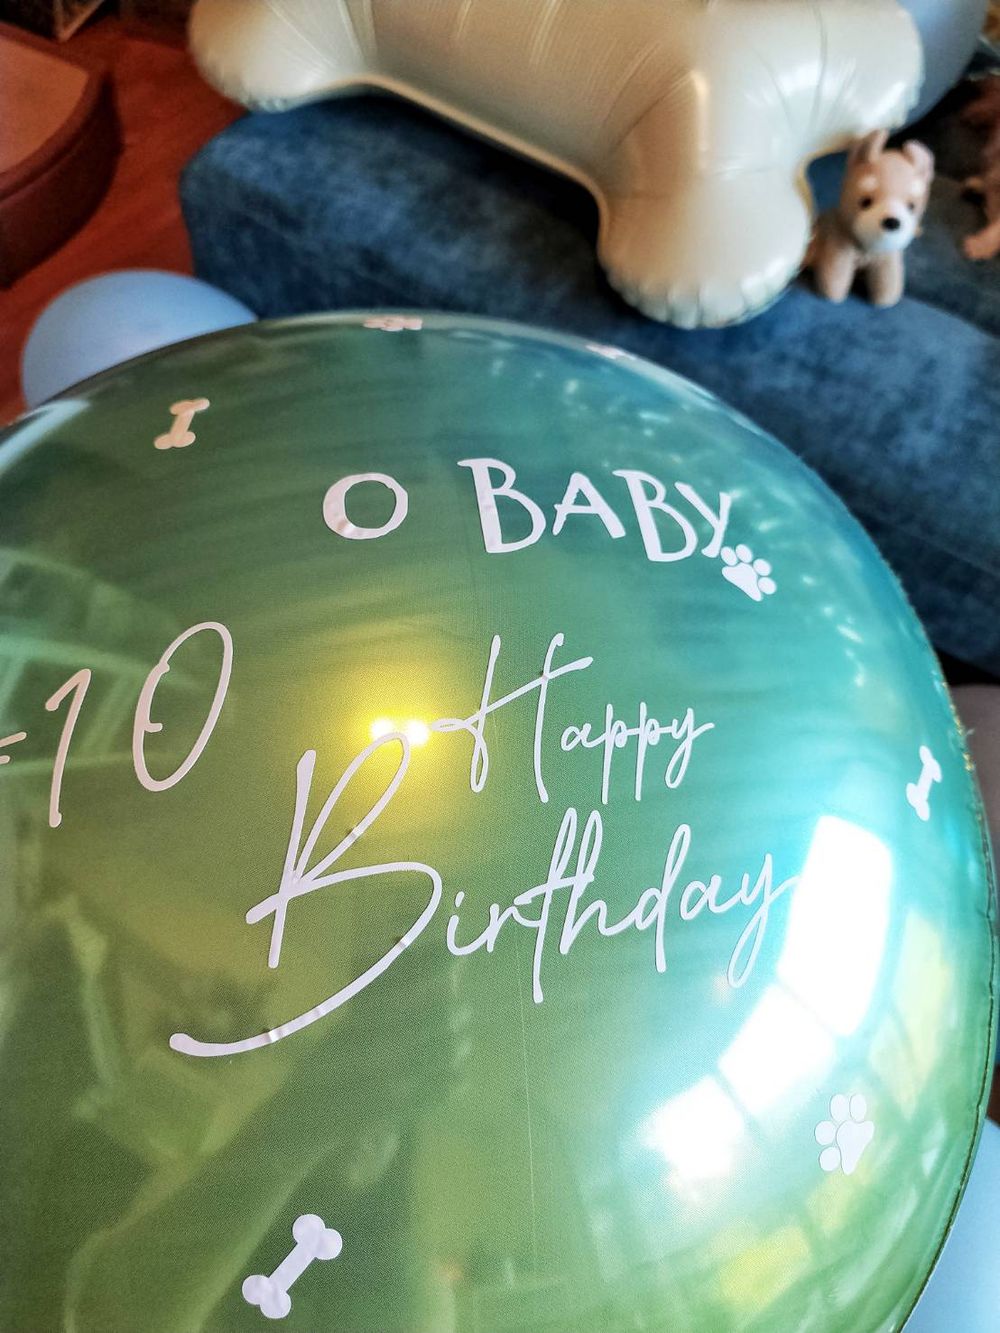 【節慶氣球裝置藝術布置】狗狗生日派對氣球「動森主題」套裝組合 KNJ氣球商城 吃貨旅遊作家水靜葳 (20)